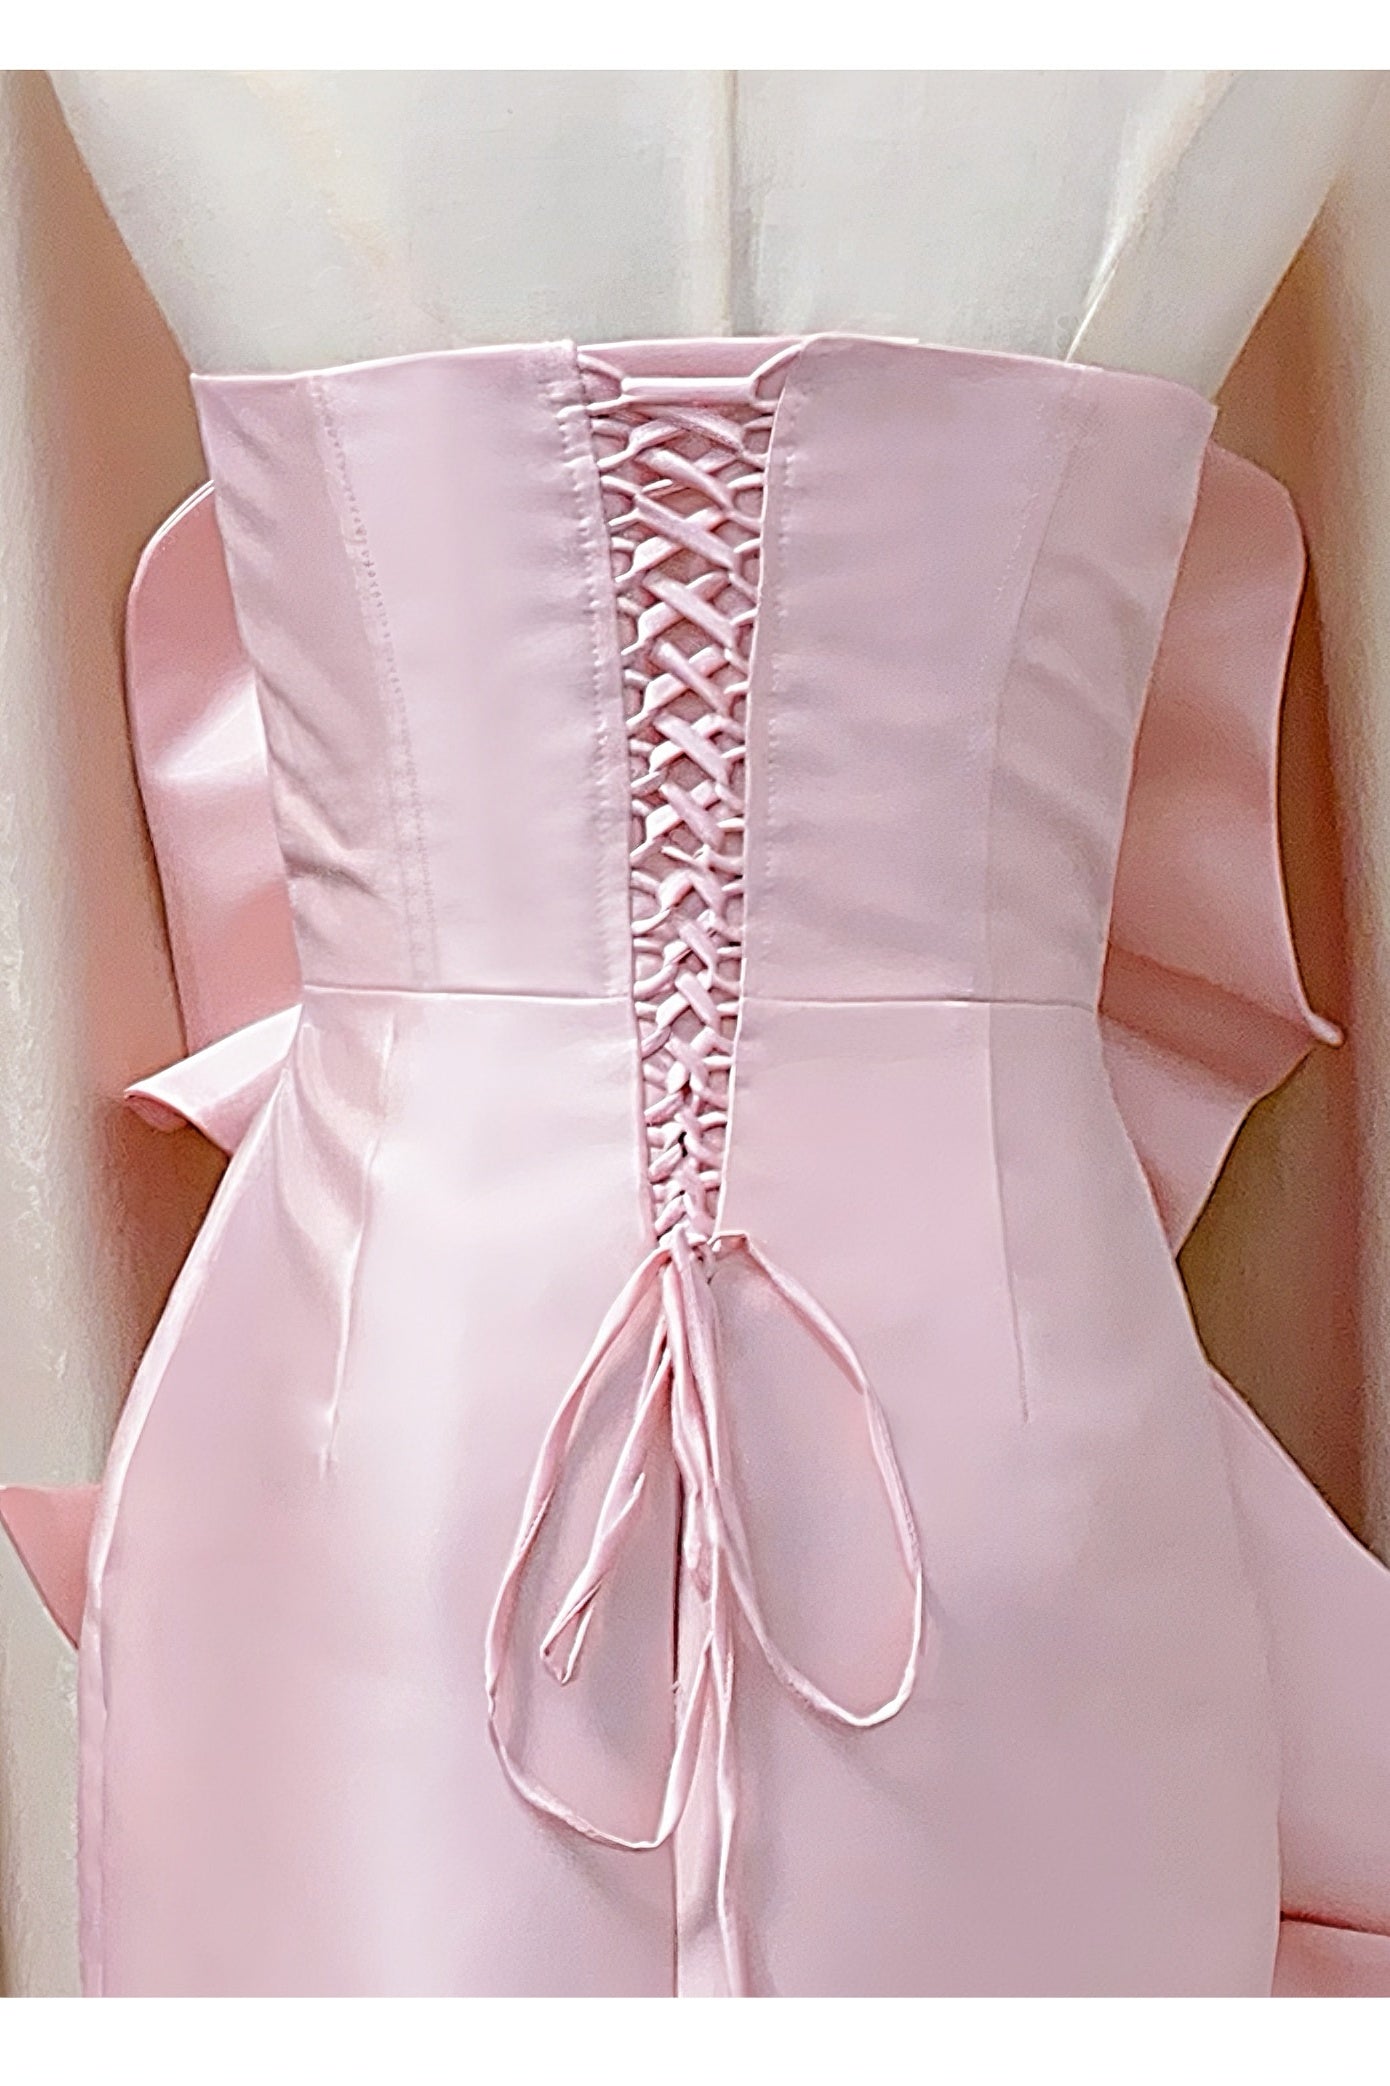 Sisakphoto™-Off-the-shoulder pink tube top evening dress